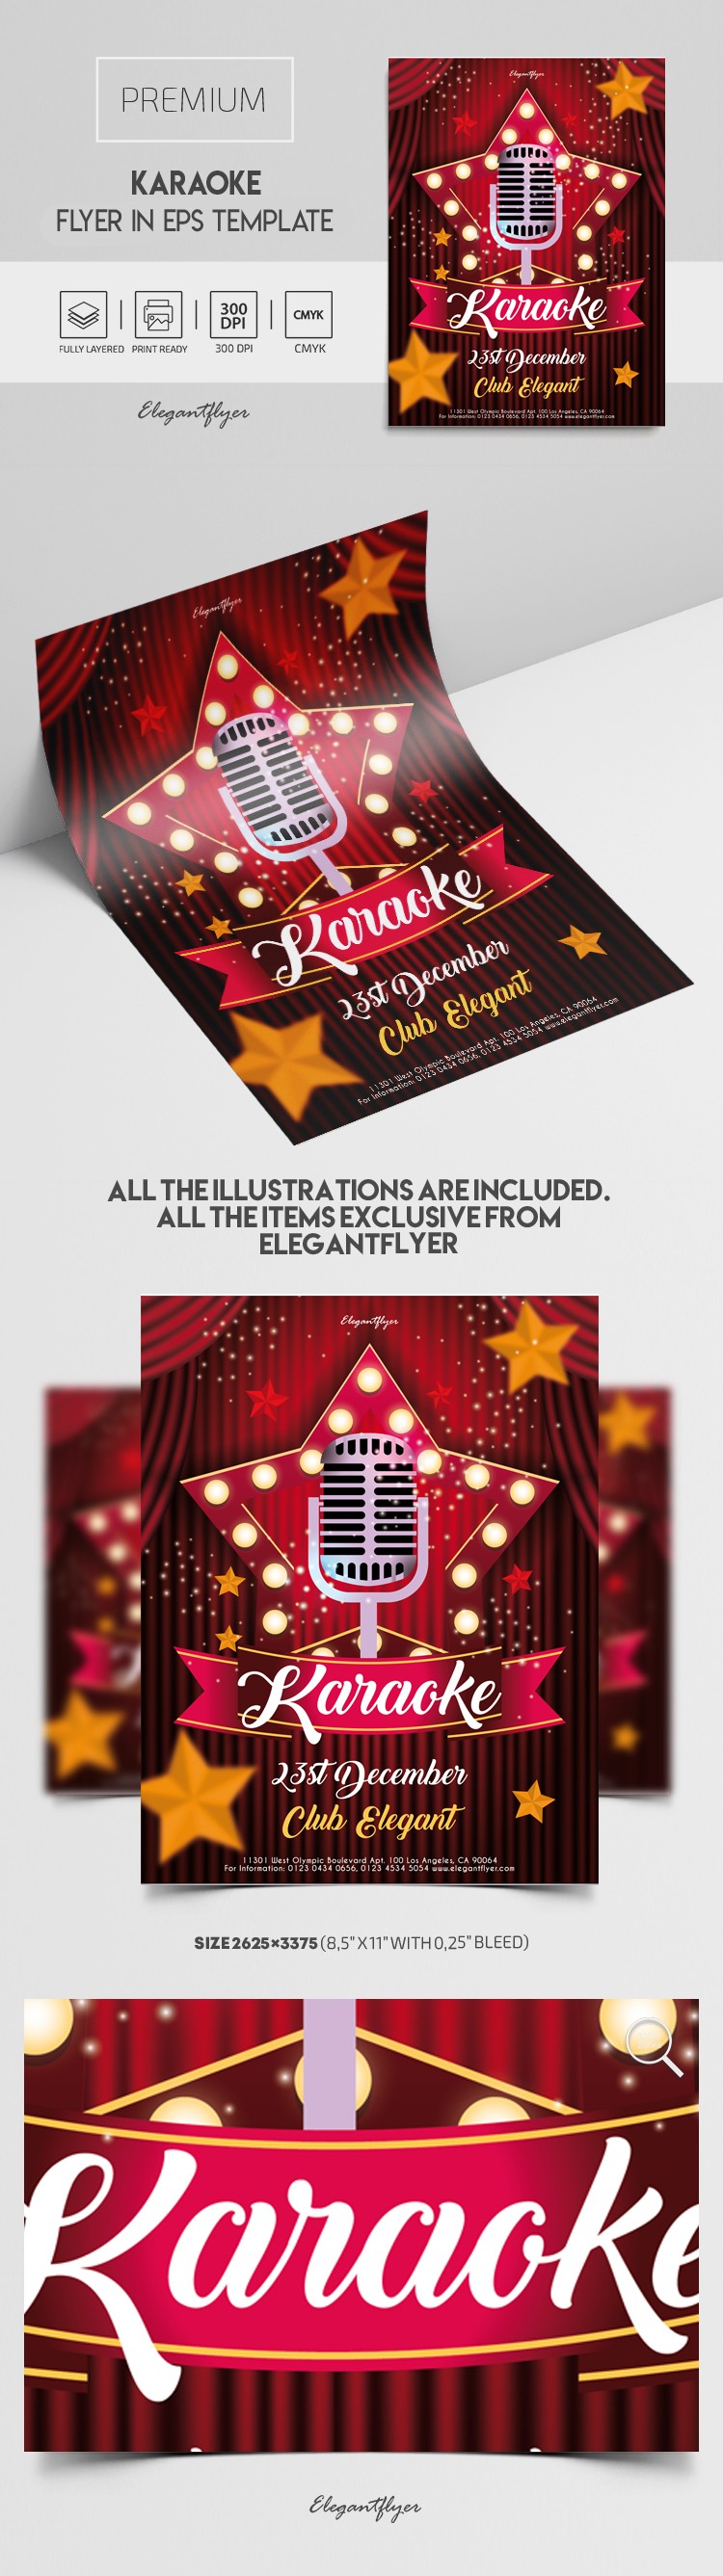 Karaoke Flyer by ElegantFlyer